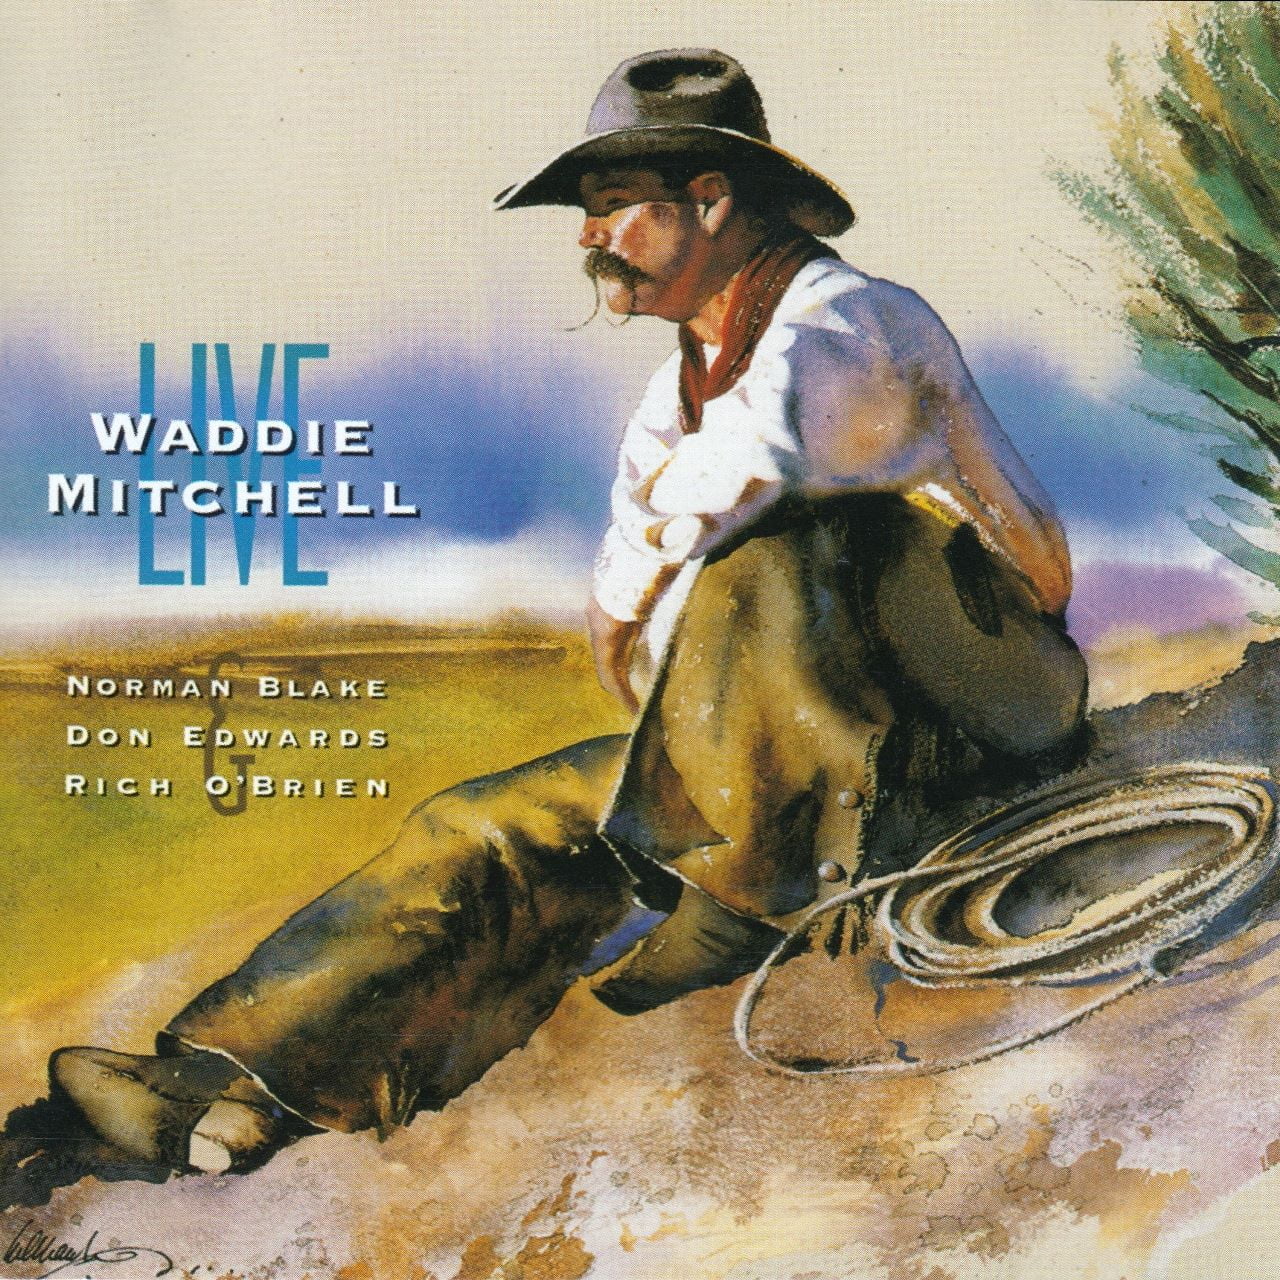 Waddie Mitchell - Live cover album